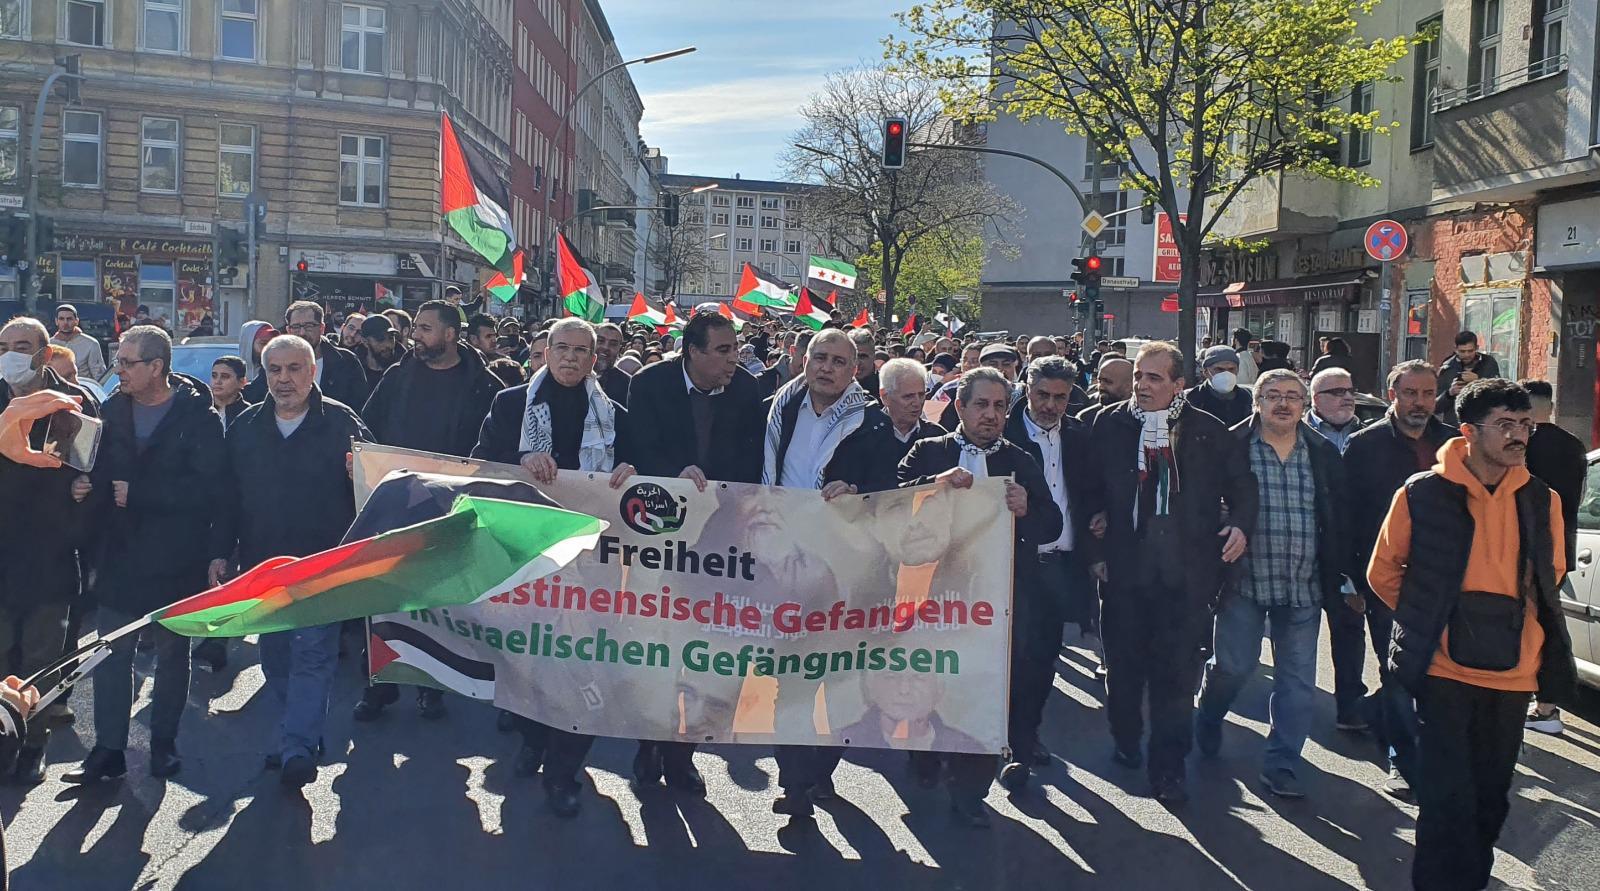 مظاهرة في برلين تطالب أوروبا بوقف المعايير المزدوجة تجاه الفلسطينيين